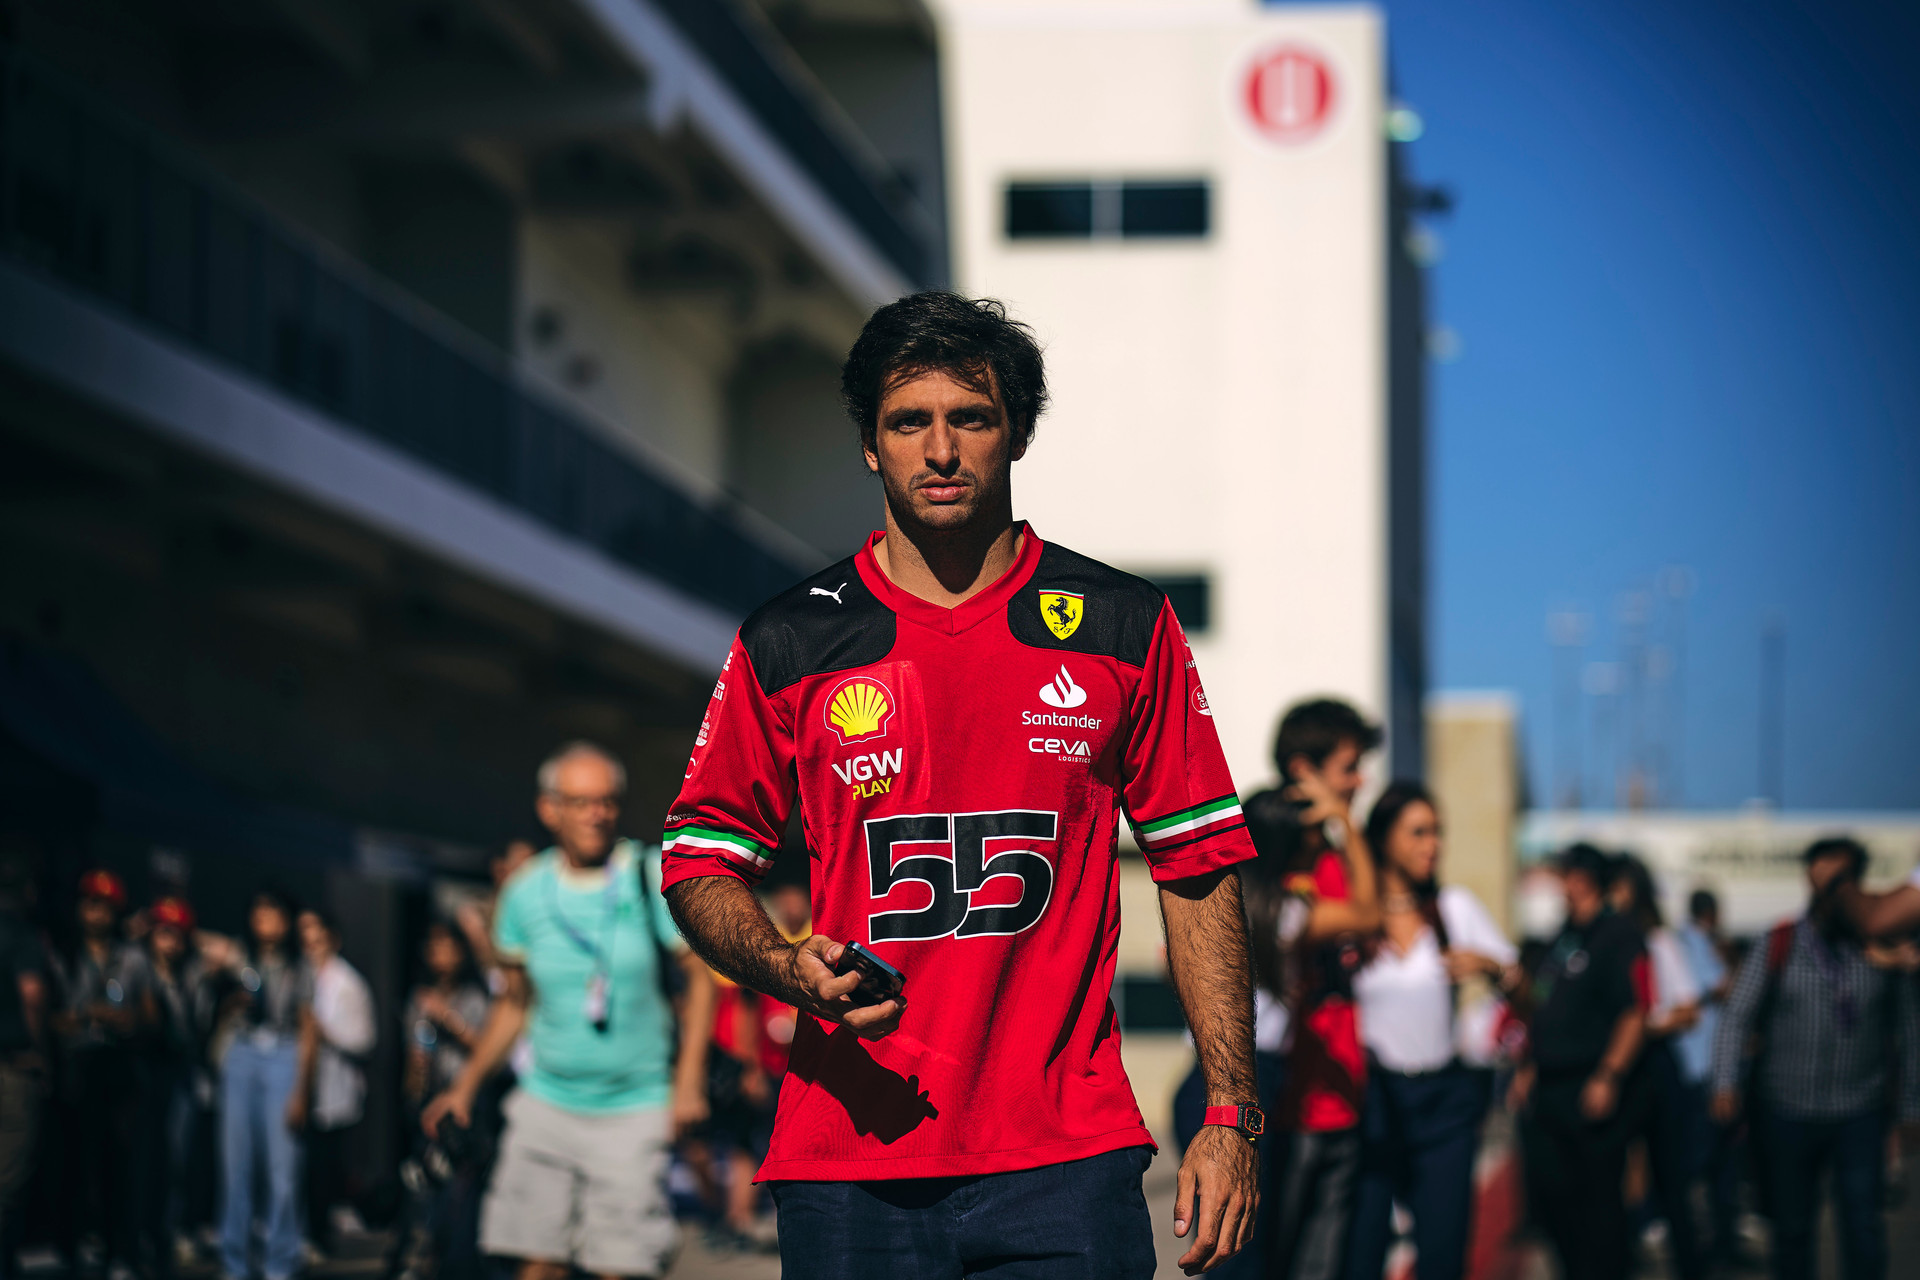 Gran Premio degli Stati Uniti – Carlos: “Ho voglia di rifarmi dopo la delusione del Qatar”